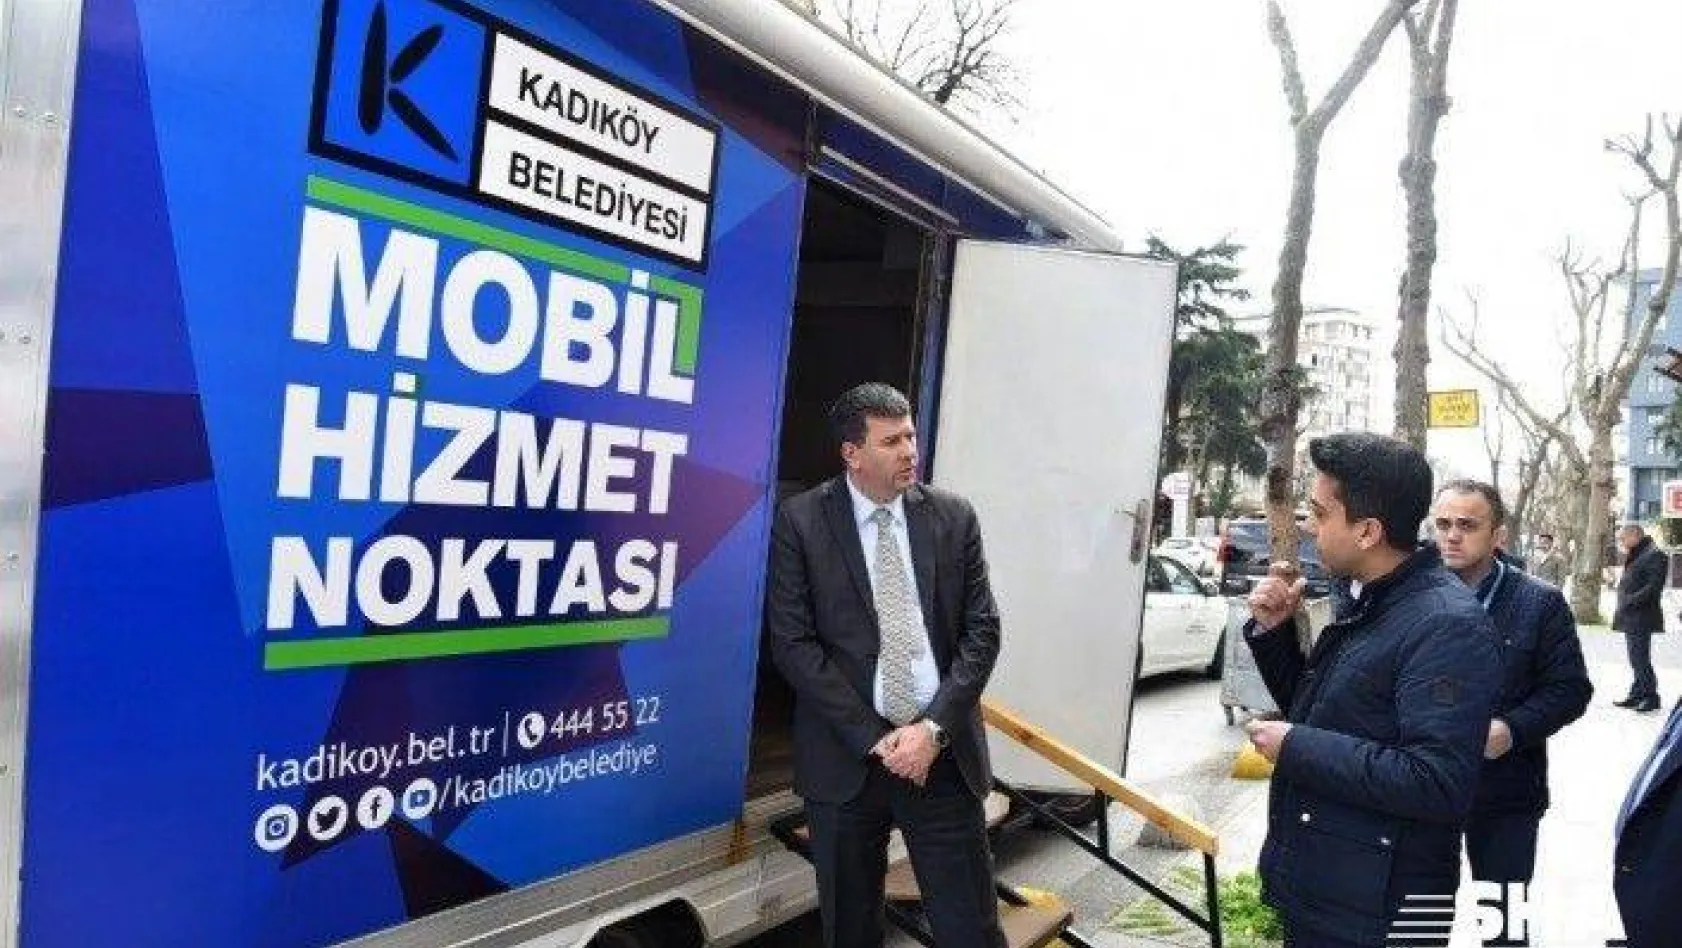 Kadıköy Belediyesi'nin Korona virüs çalışması aralıksız sürüyor